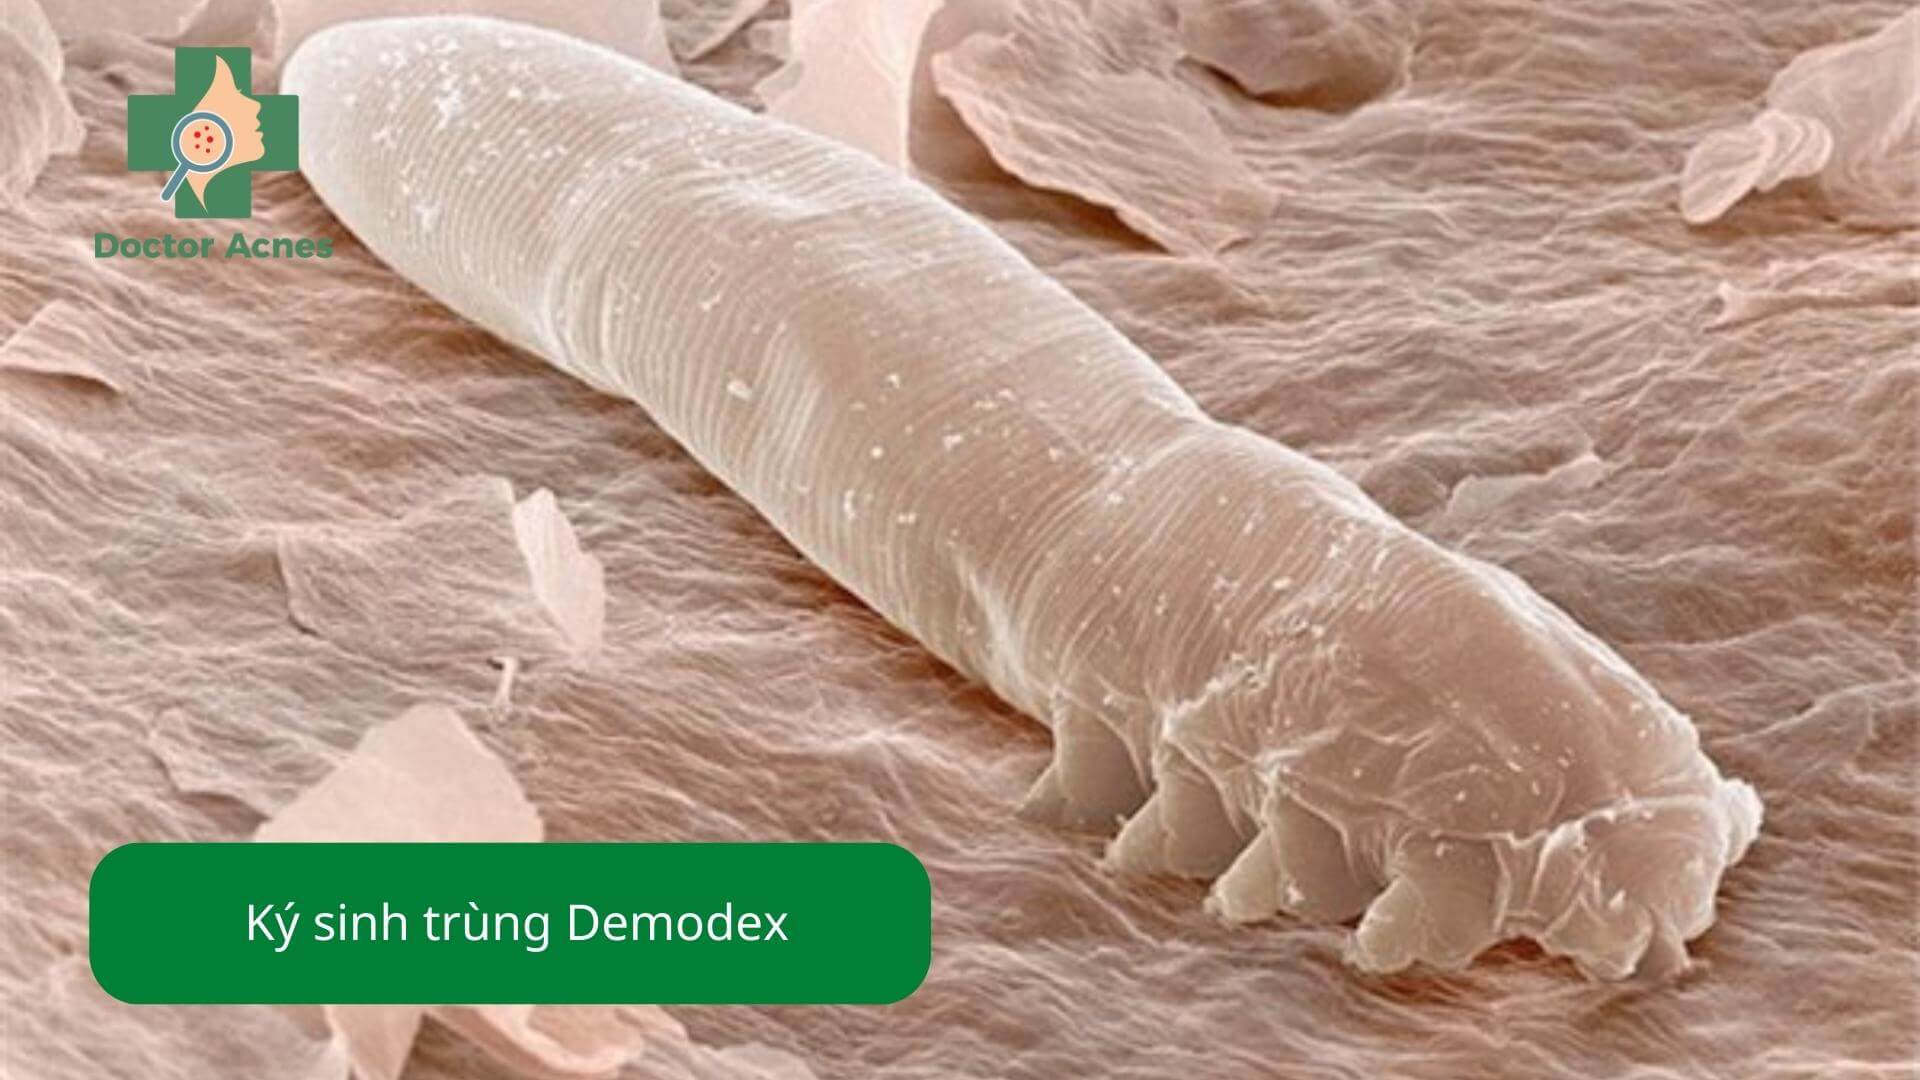 Viêm nang lông do ký sinh trùng Demodex - Doctor Acnes